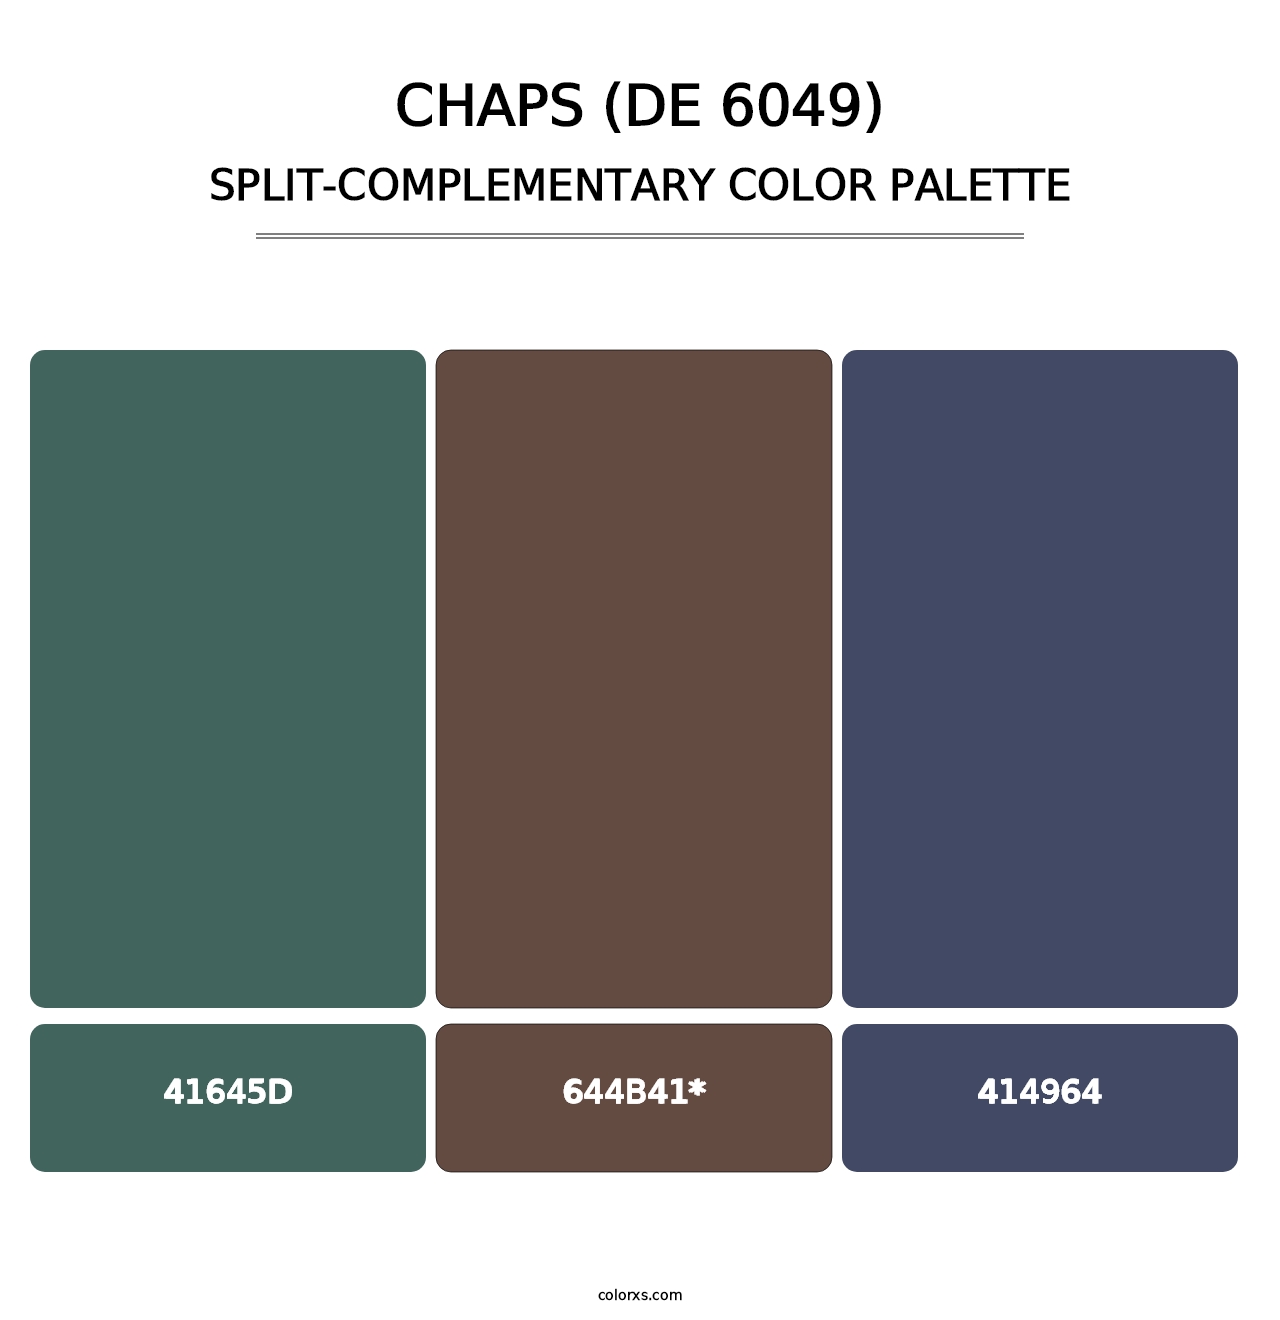 Chaps (DE 6049) - Split-Complementary Color Palette